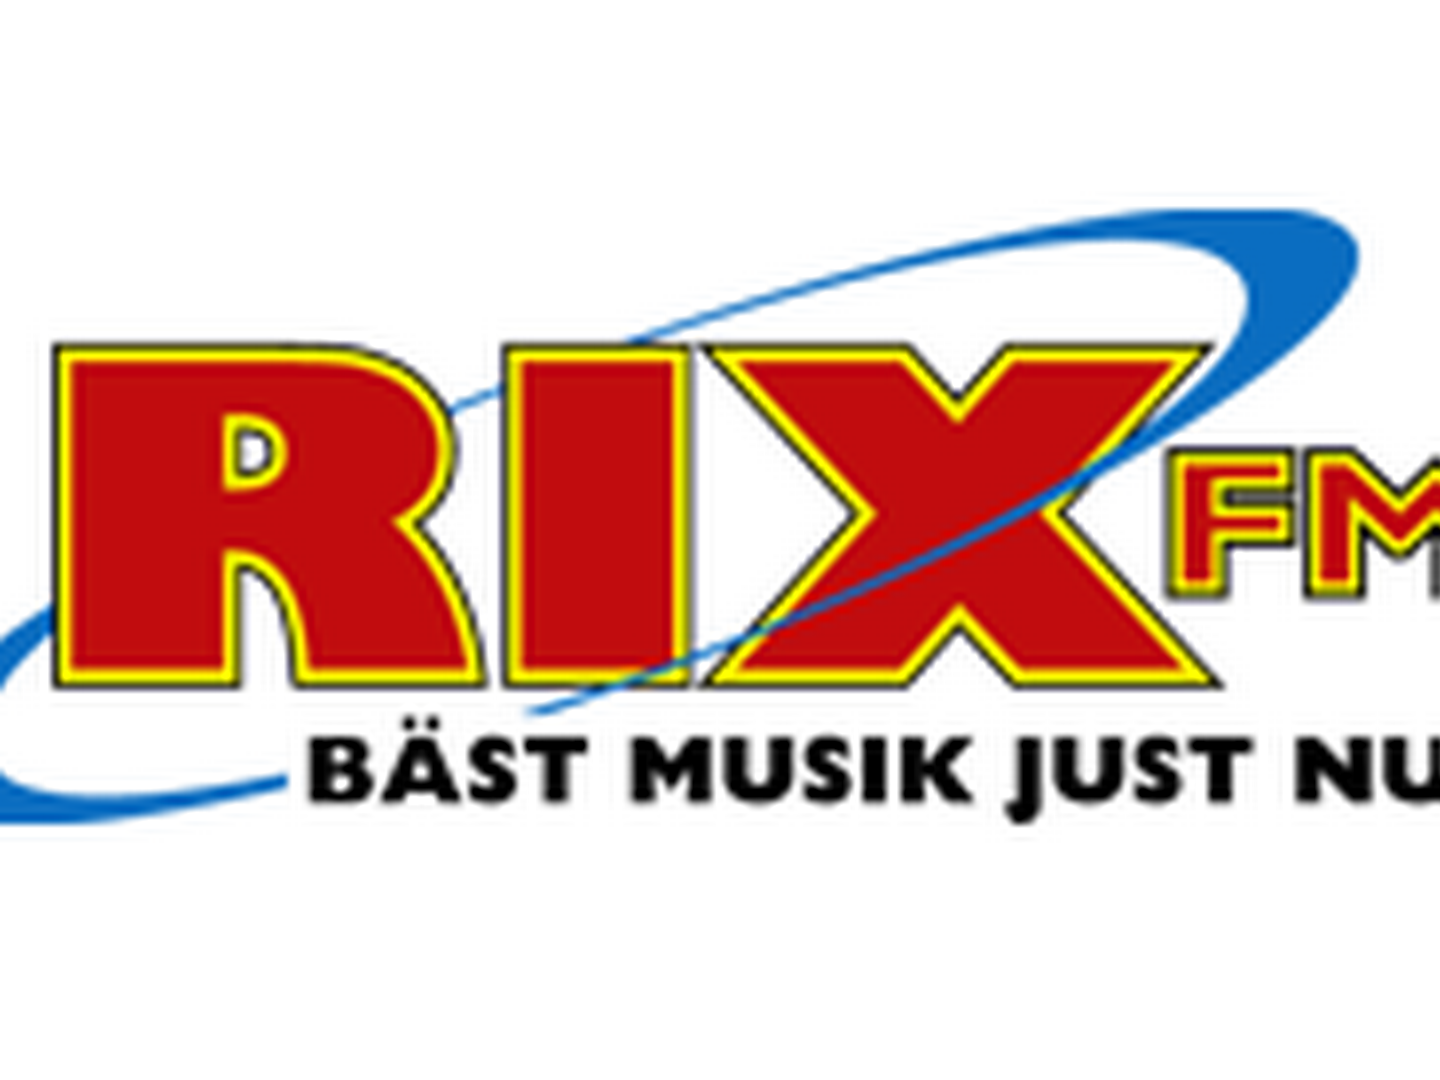 MTG's svenske hovedbrand er RIX FM